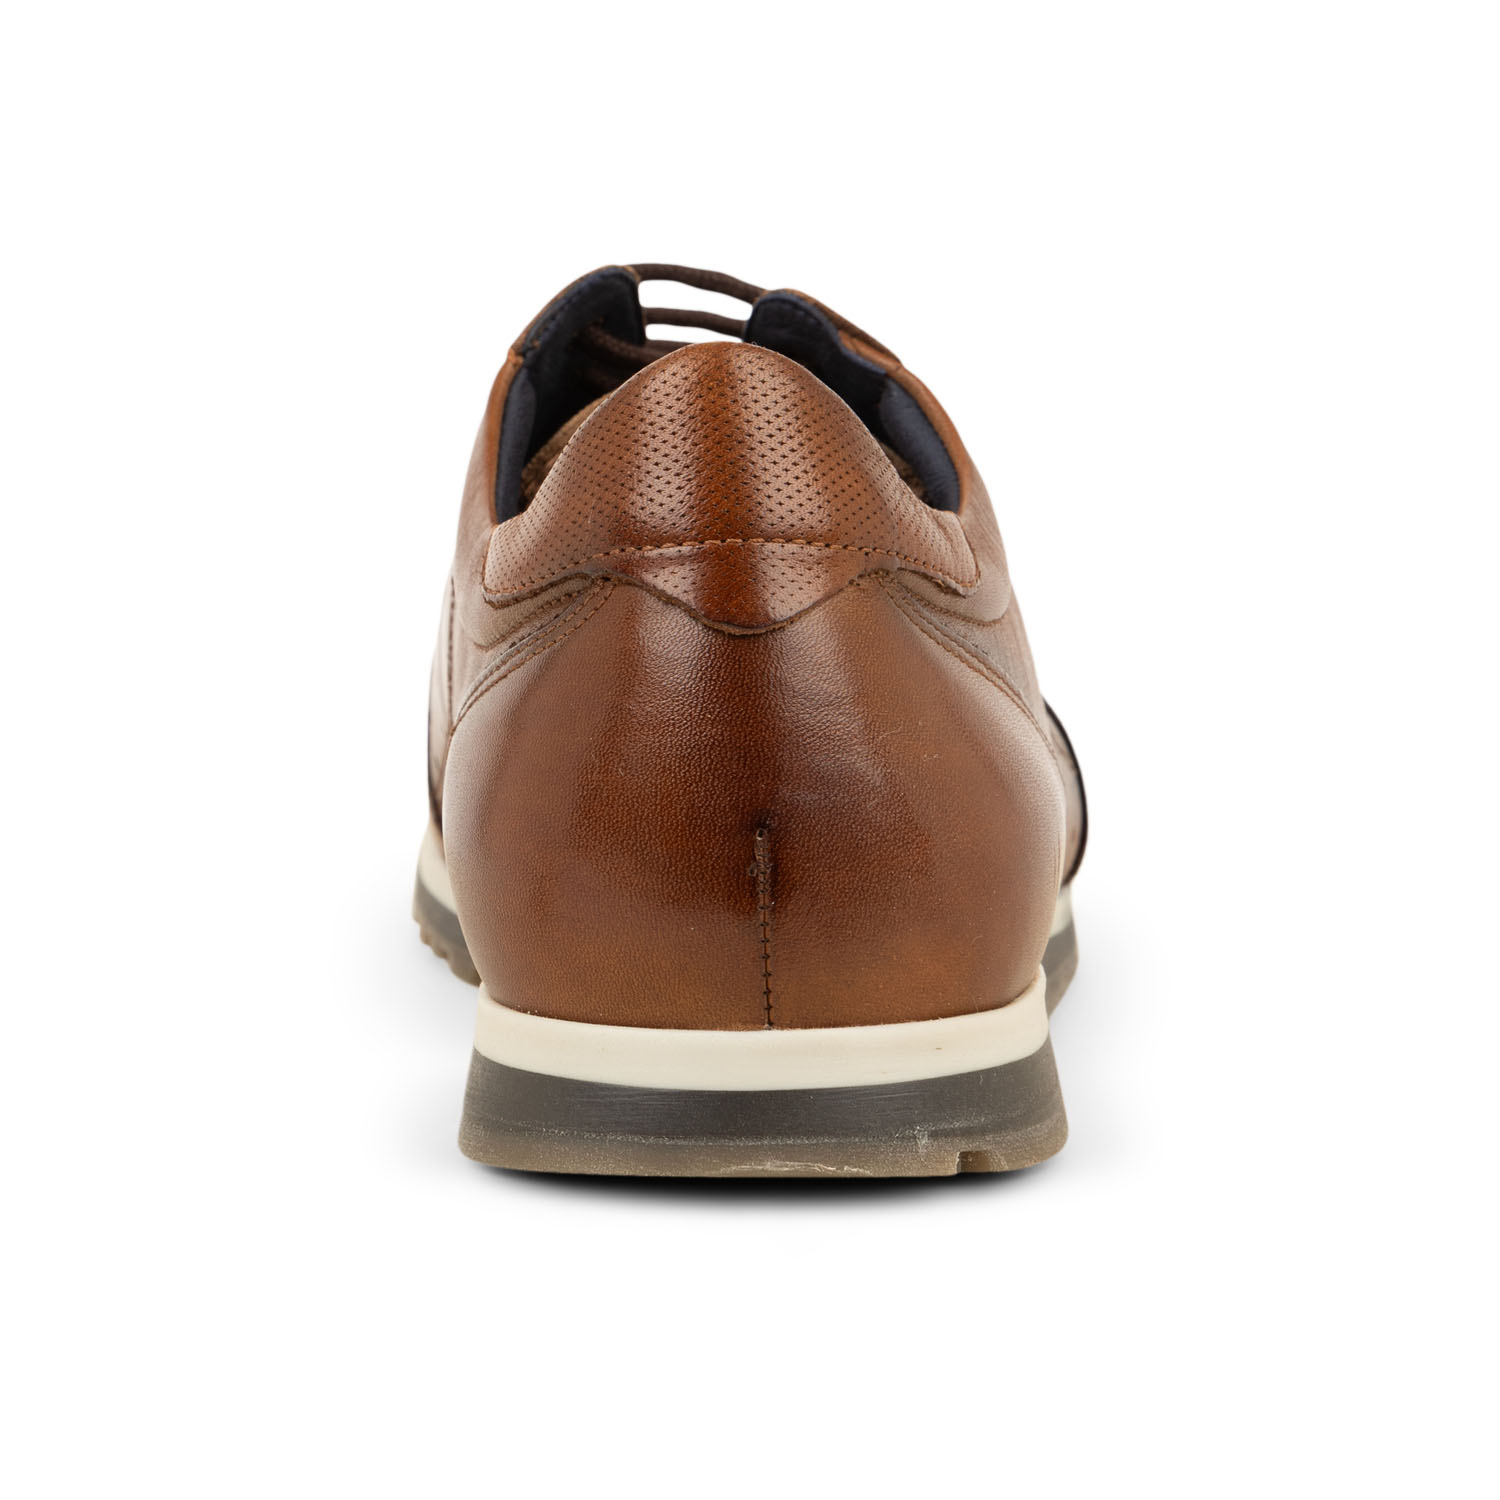 03 - SANDER - FLUCHOS - Chaussures à lacets - Cuir